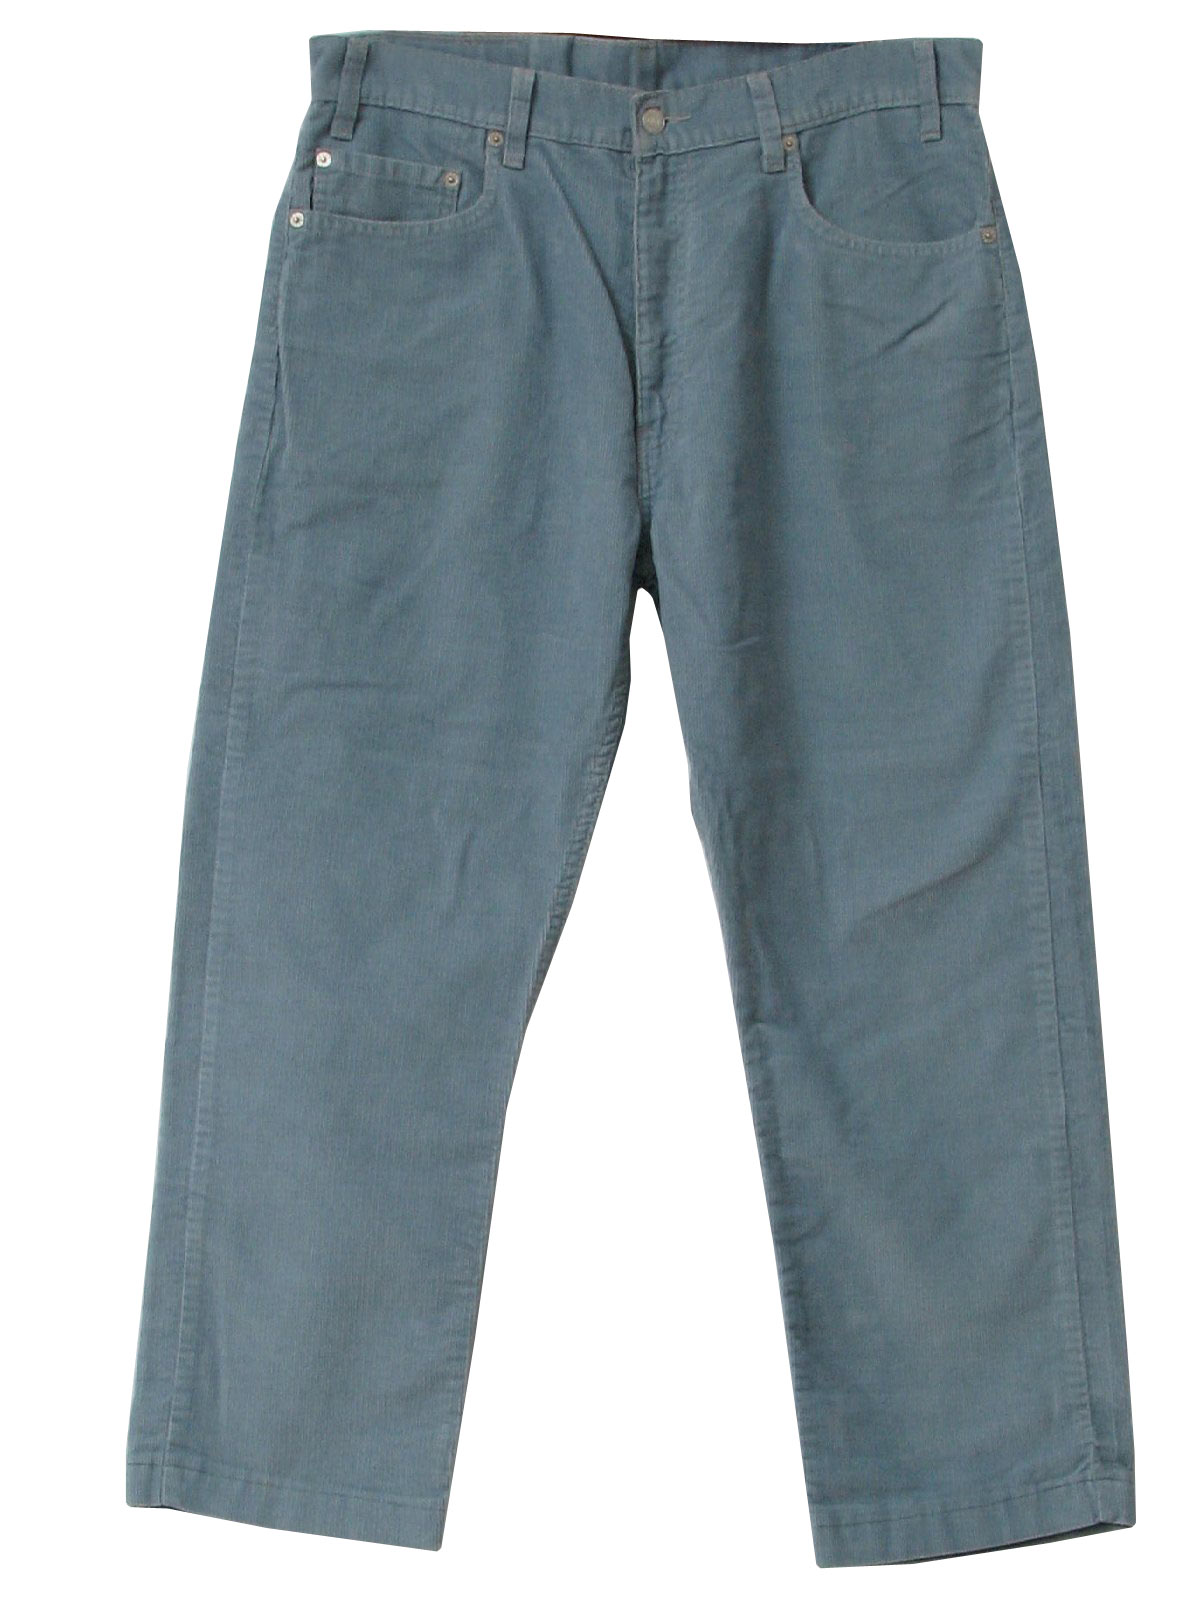 Levis 505 1980s Vintage Pants: 80s -Levis 505- Mens baby blue cotton ...